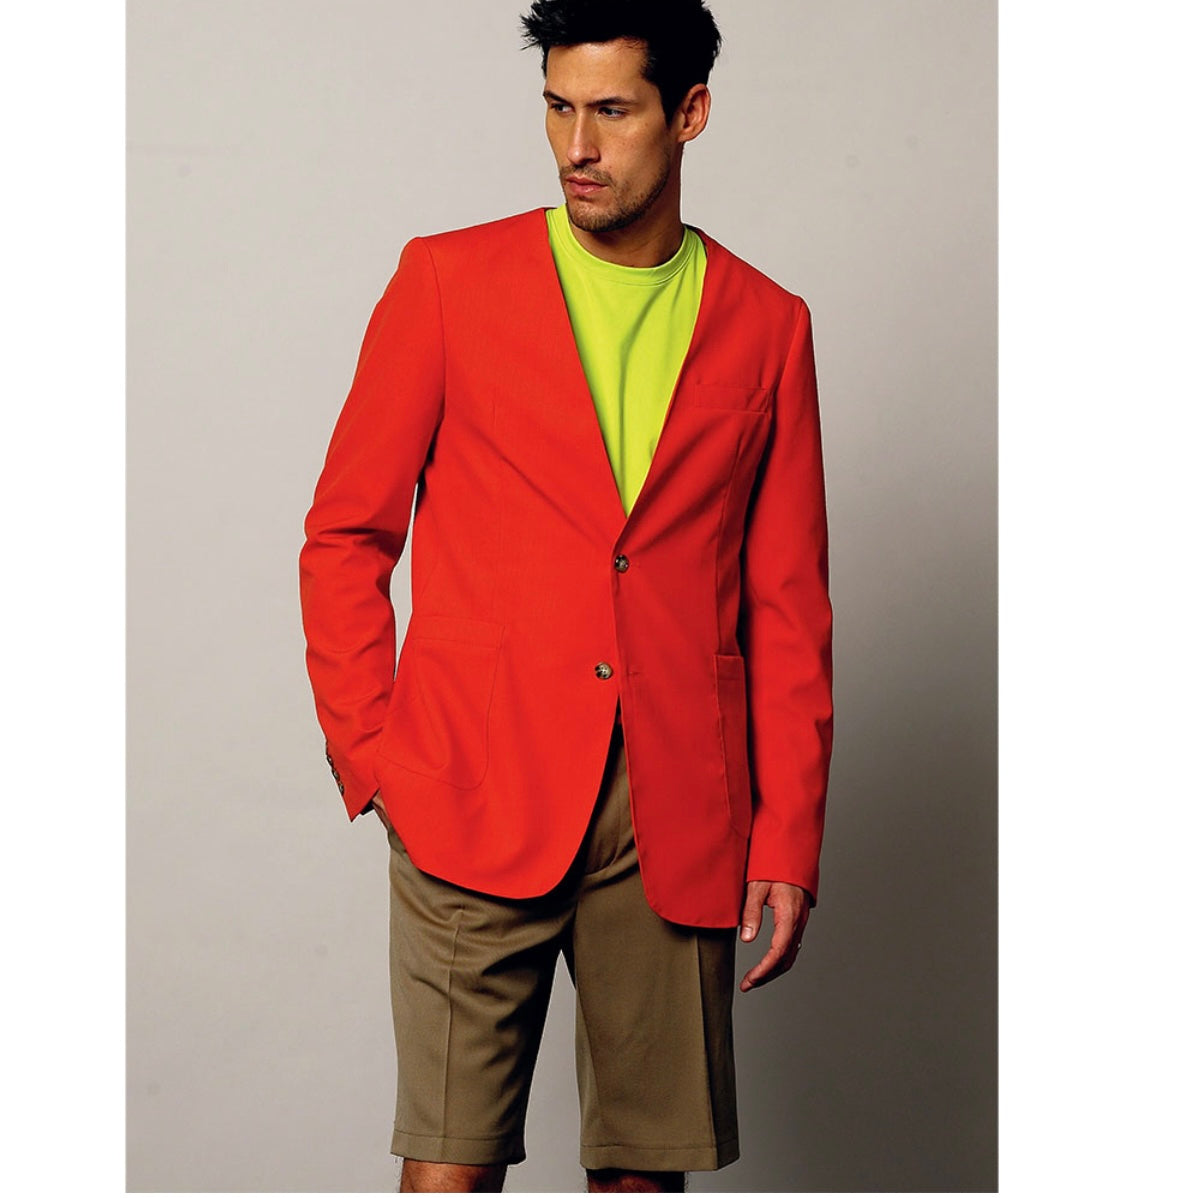 Vogue Men V8890 - Career/Suits Sewing Pattern